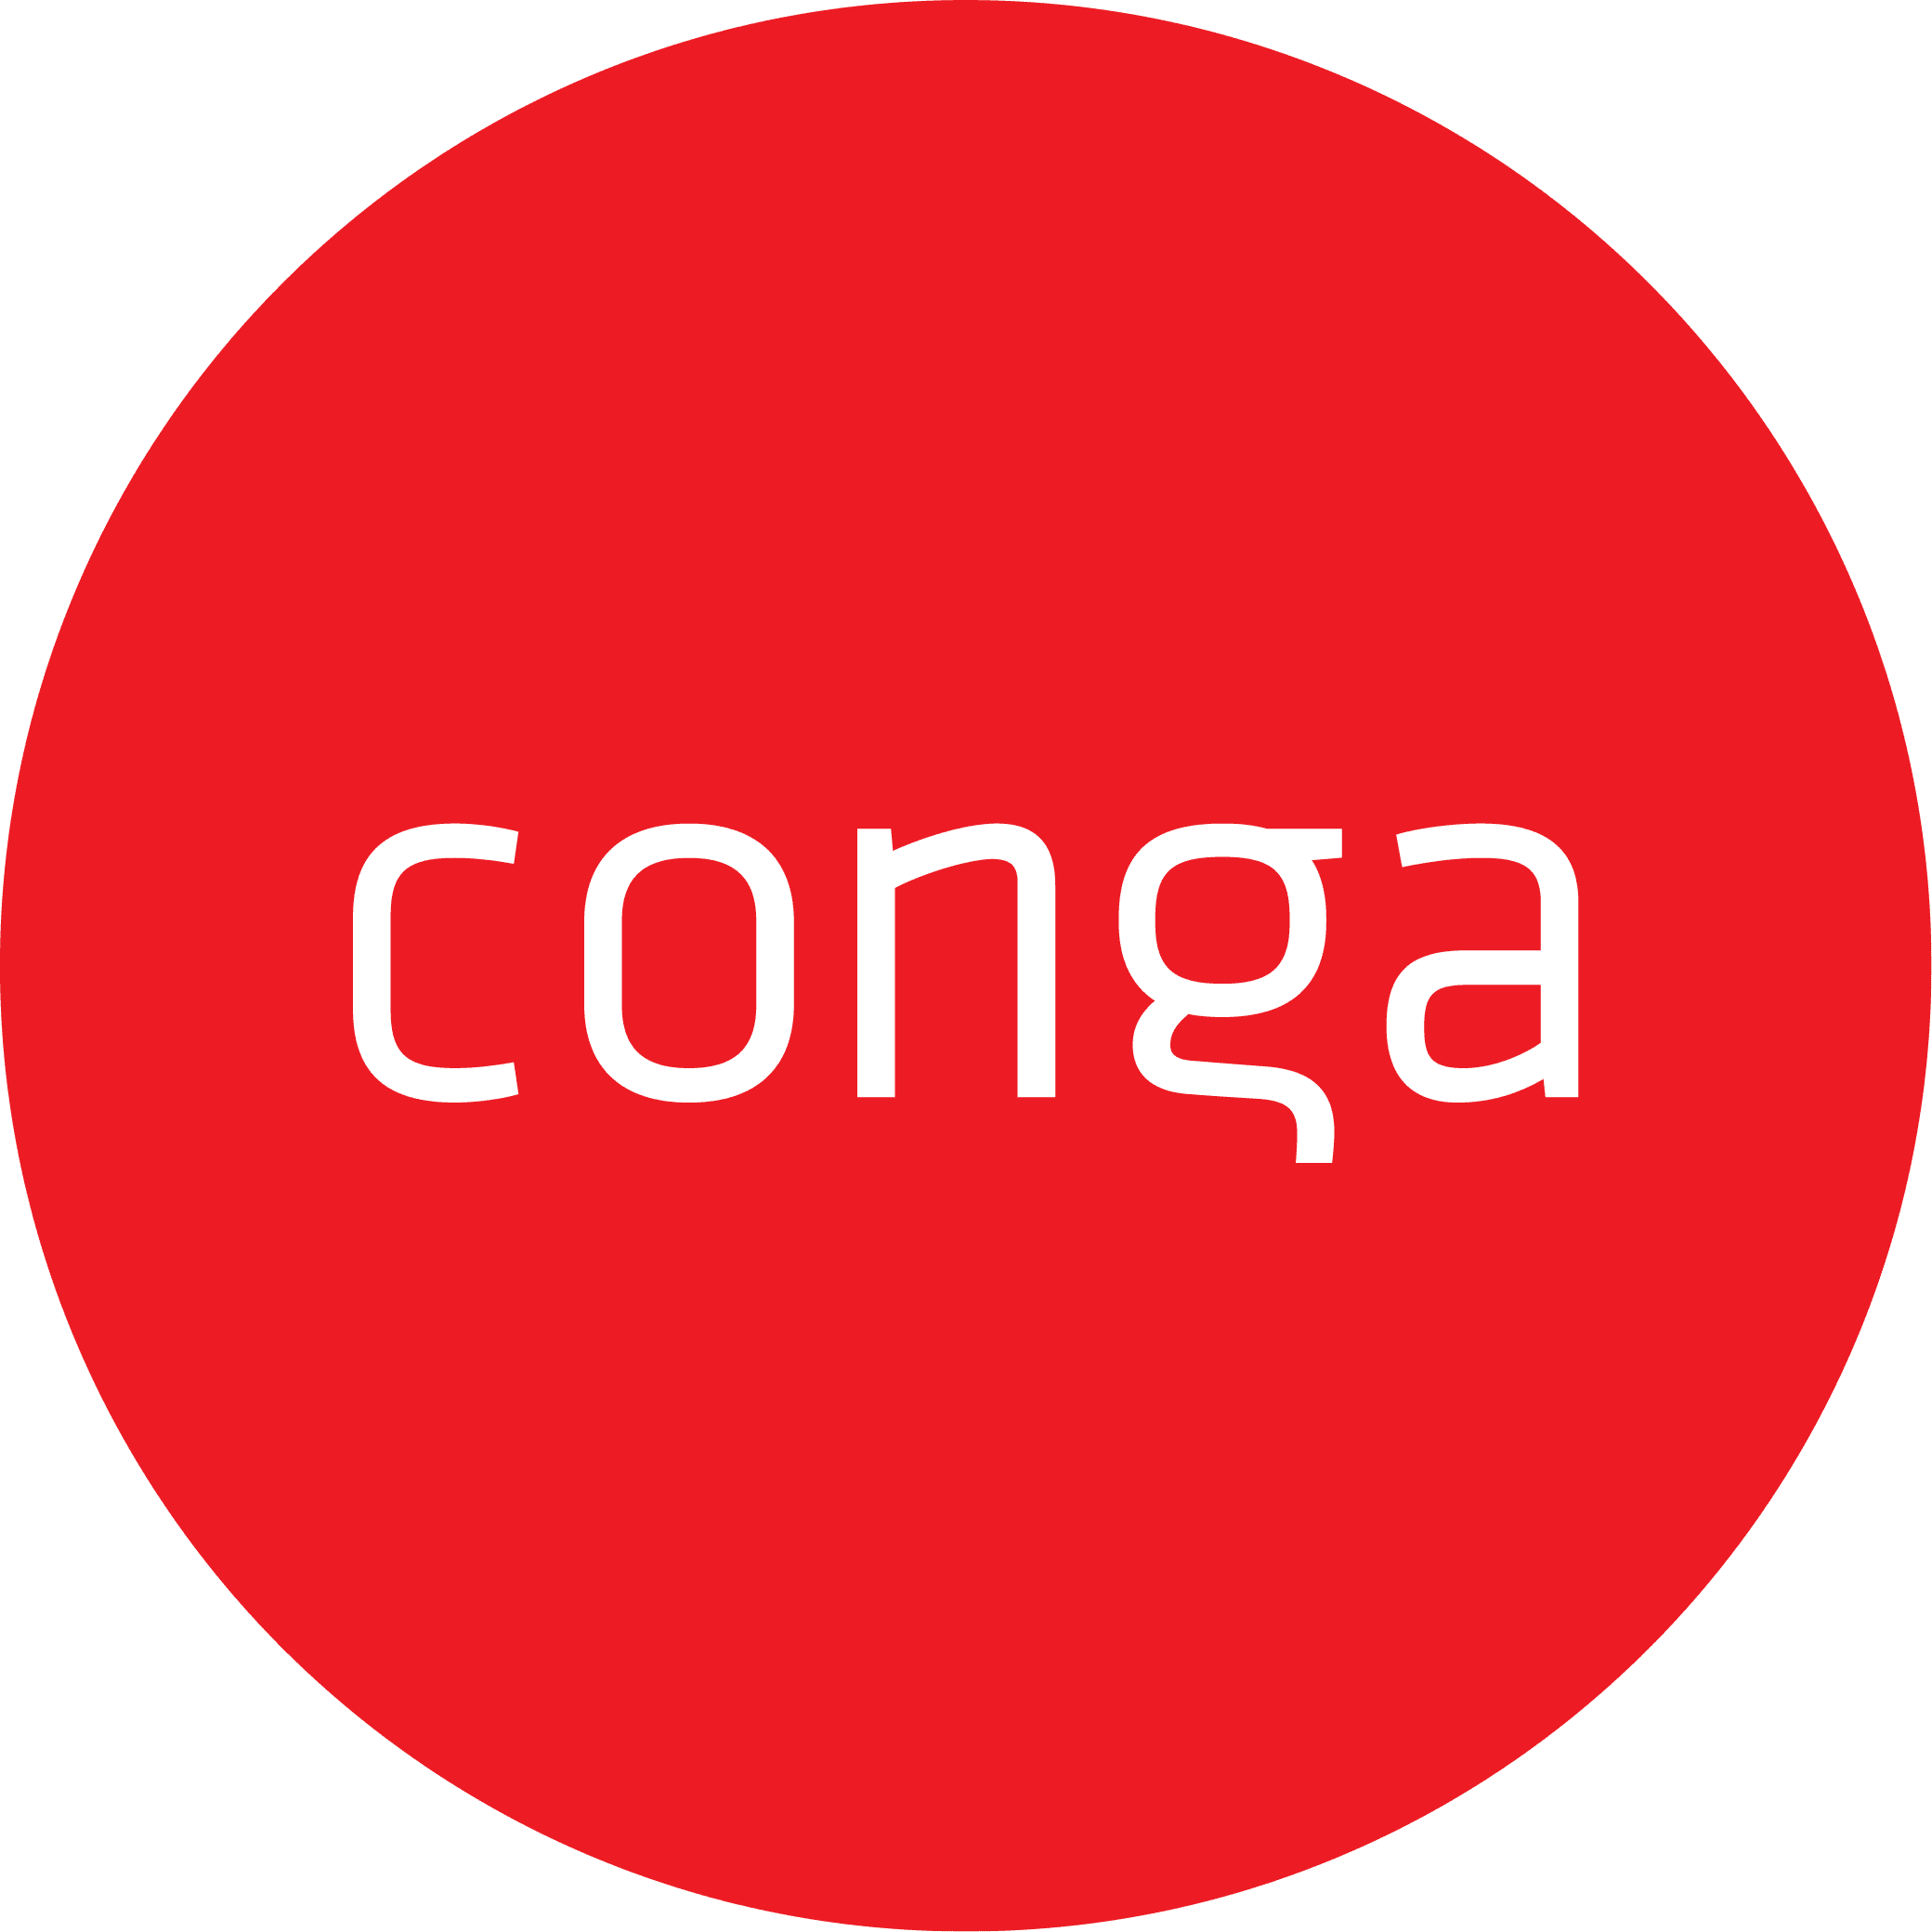 Conga logo red circle